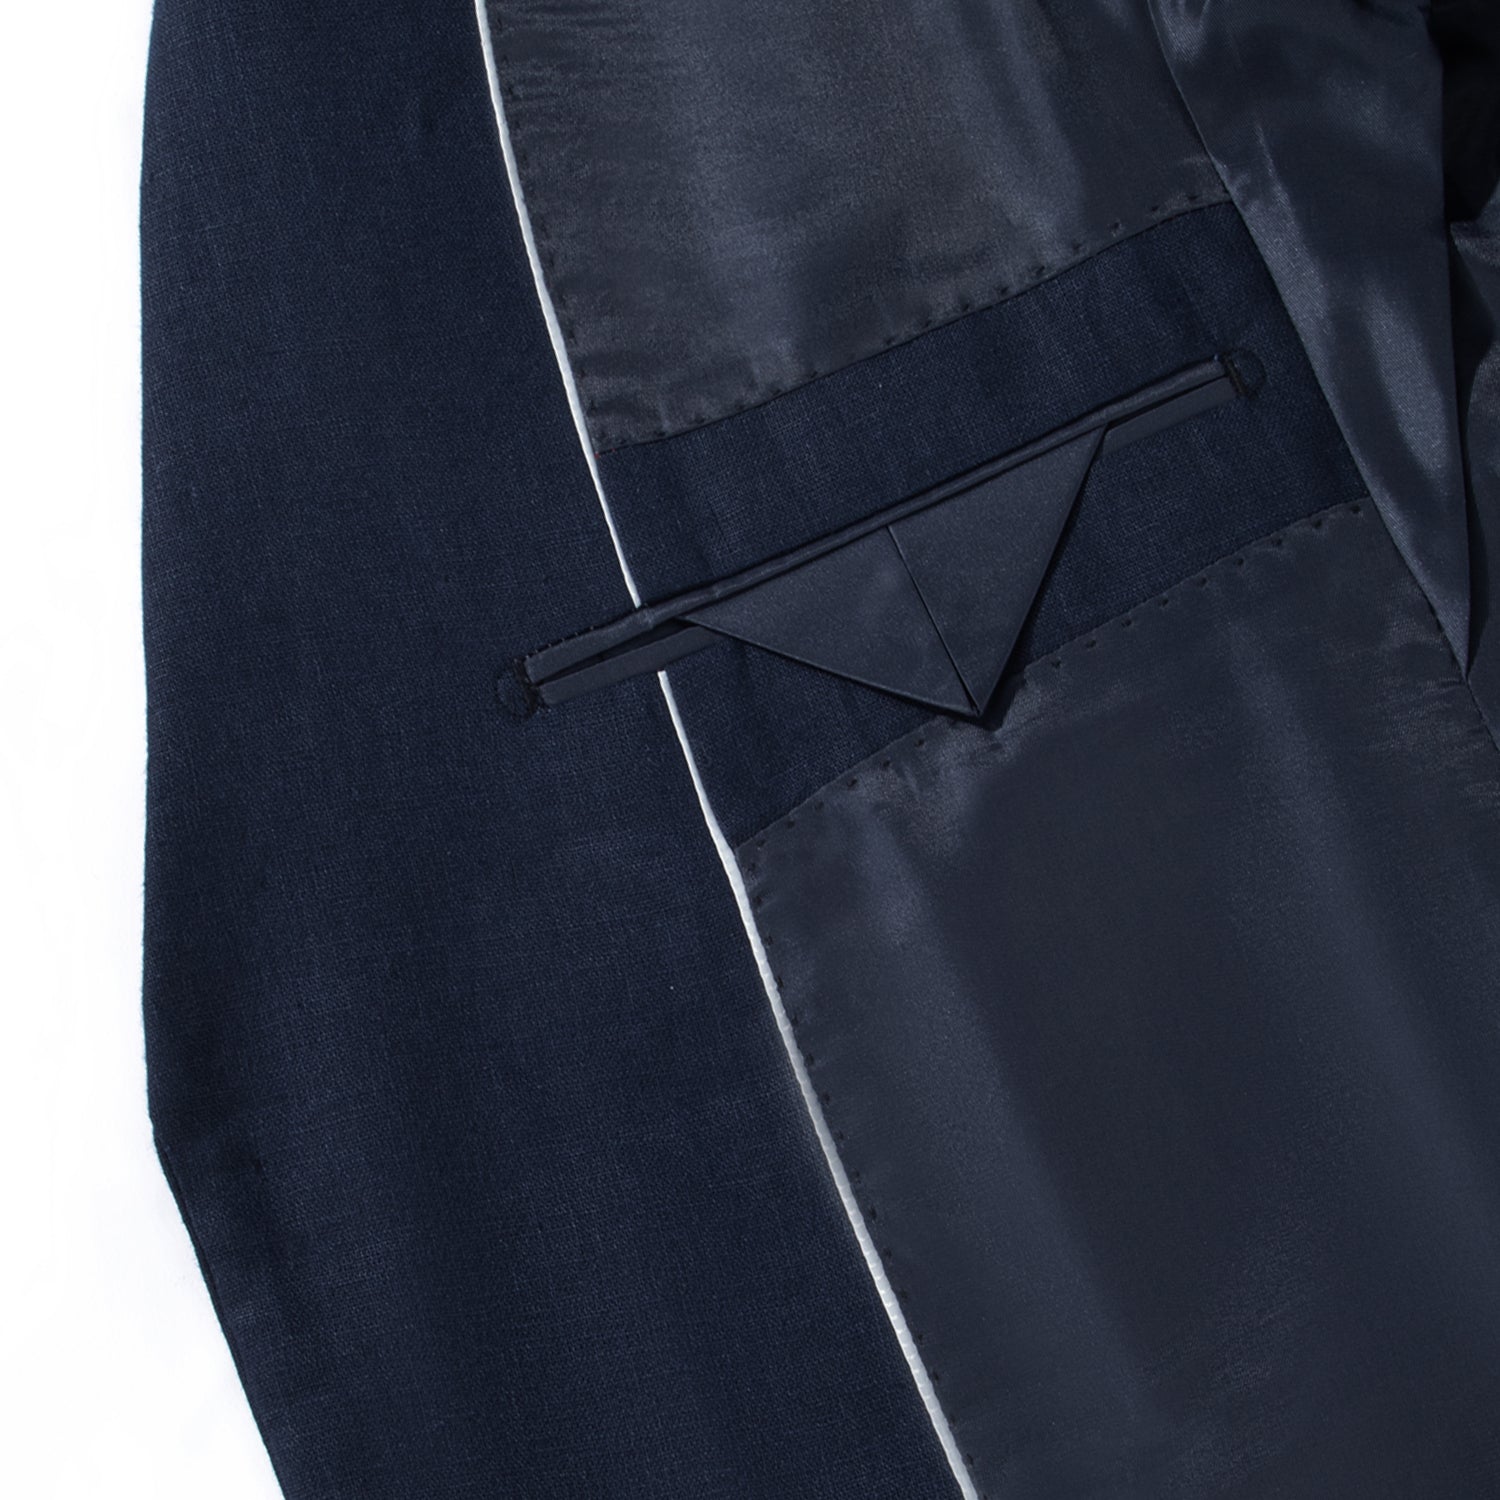 1PA1 Men's 100% Linen Navy Blue Jacket Trousers 2-Pieces Suit Set